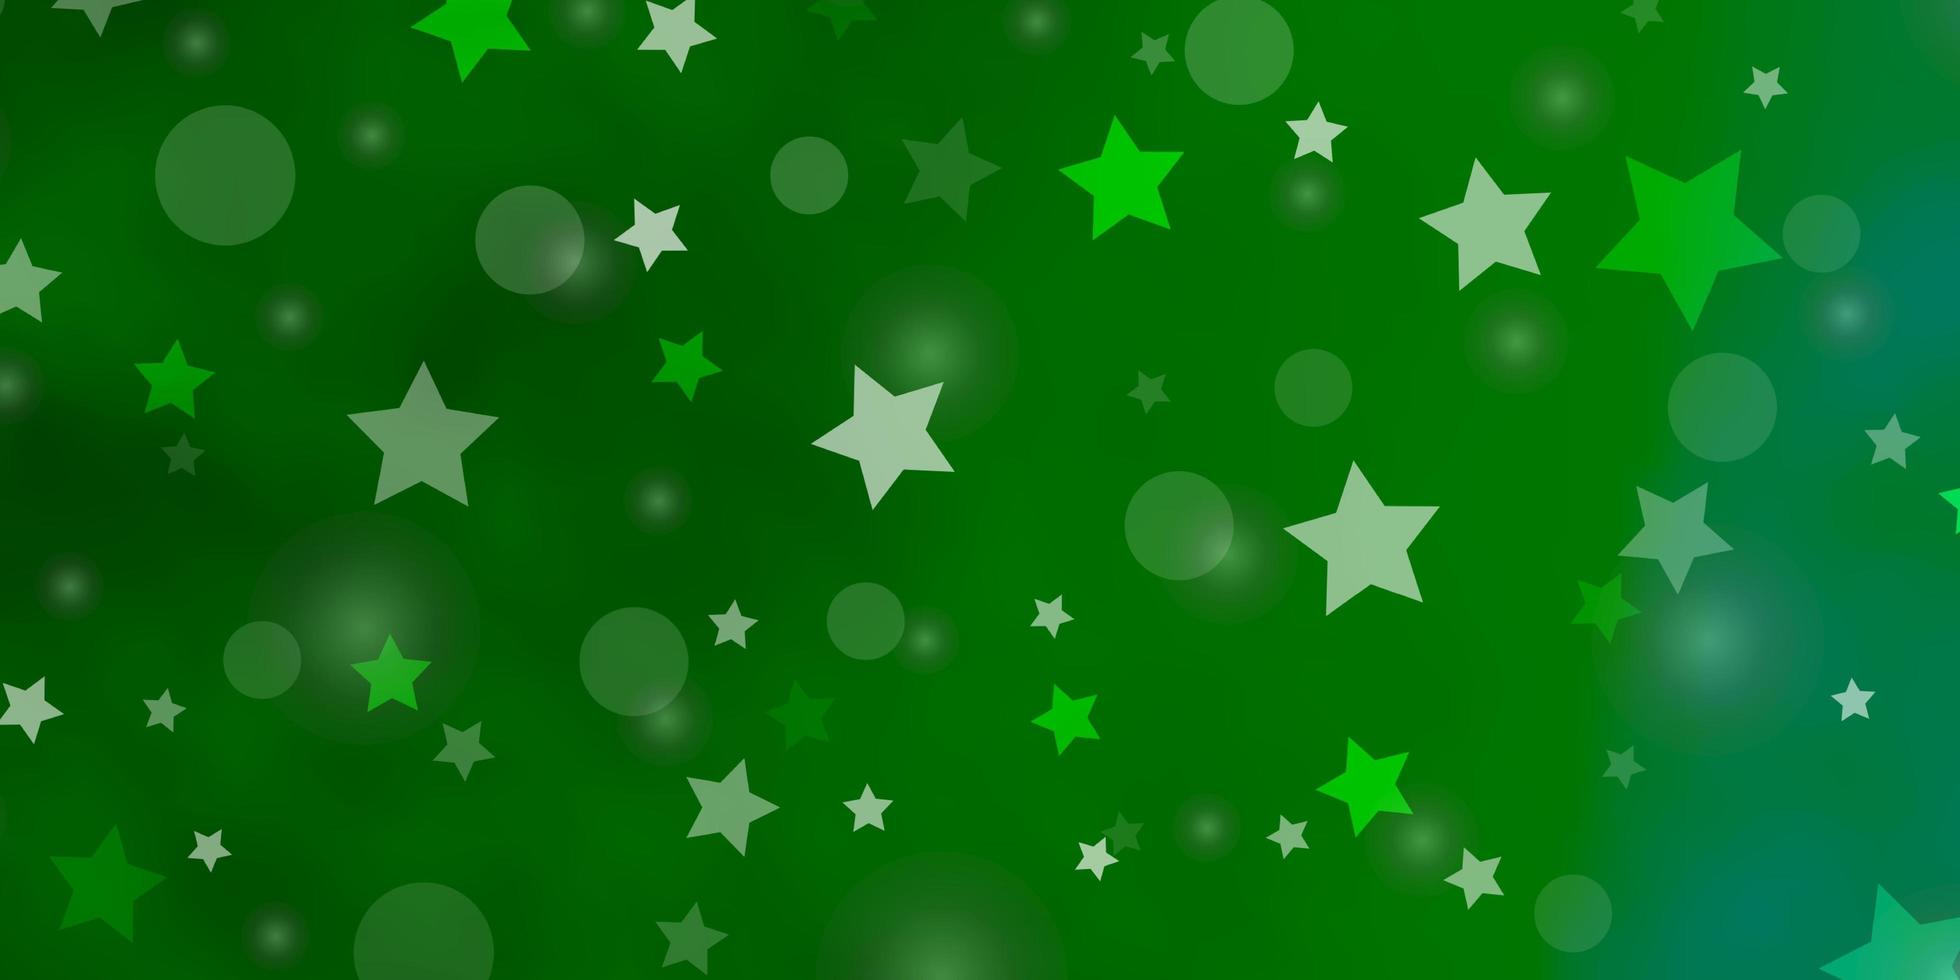 textura de vector verde claro con círculos, estrellas. Ilustración abstracta con manchas de colores, estrellas. patrón para el diseño de tela, fondos de pantalla.